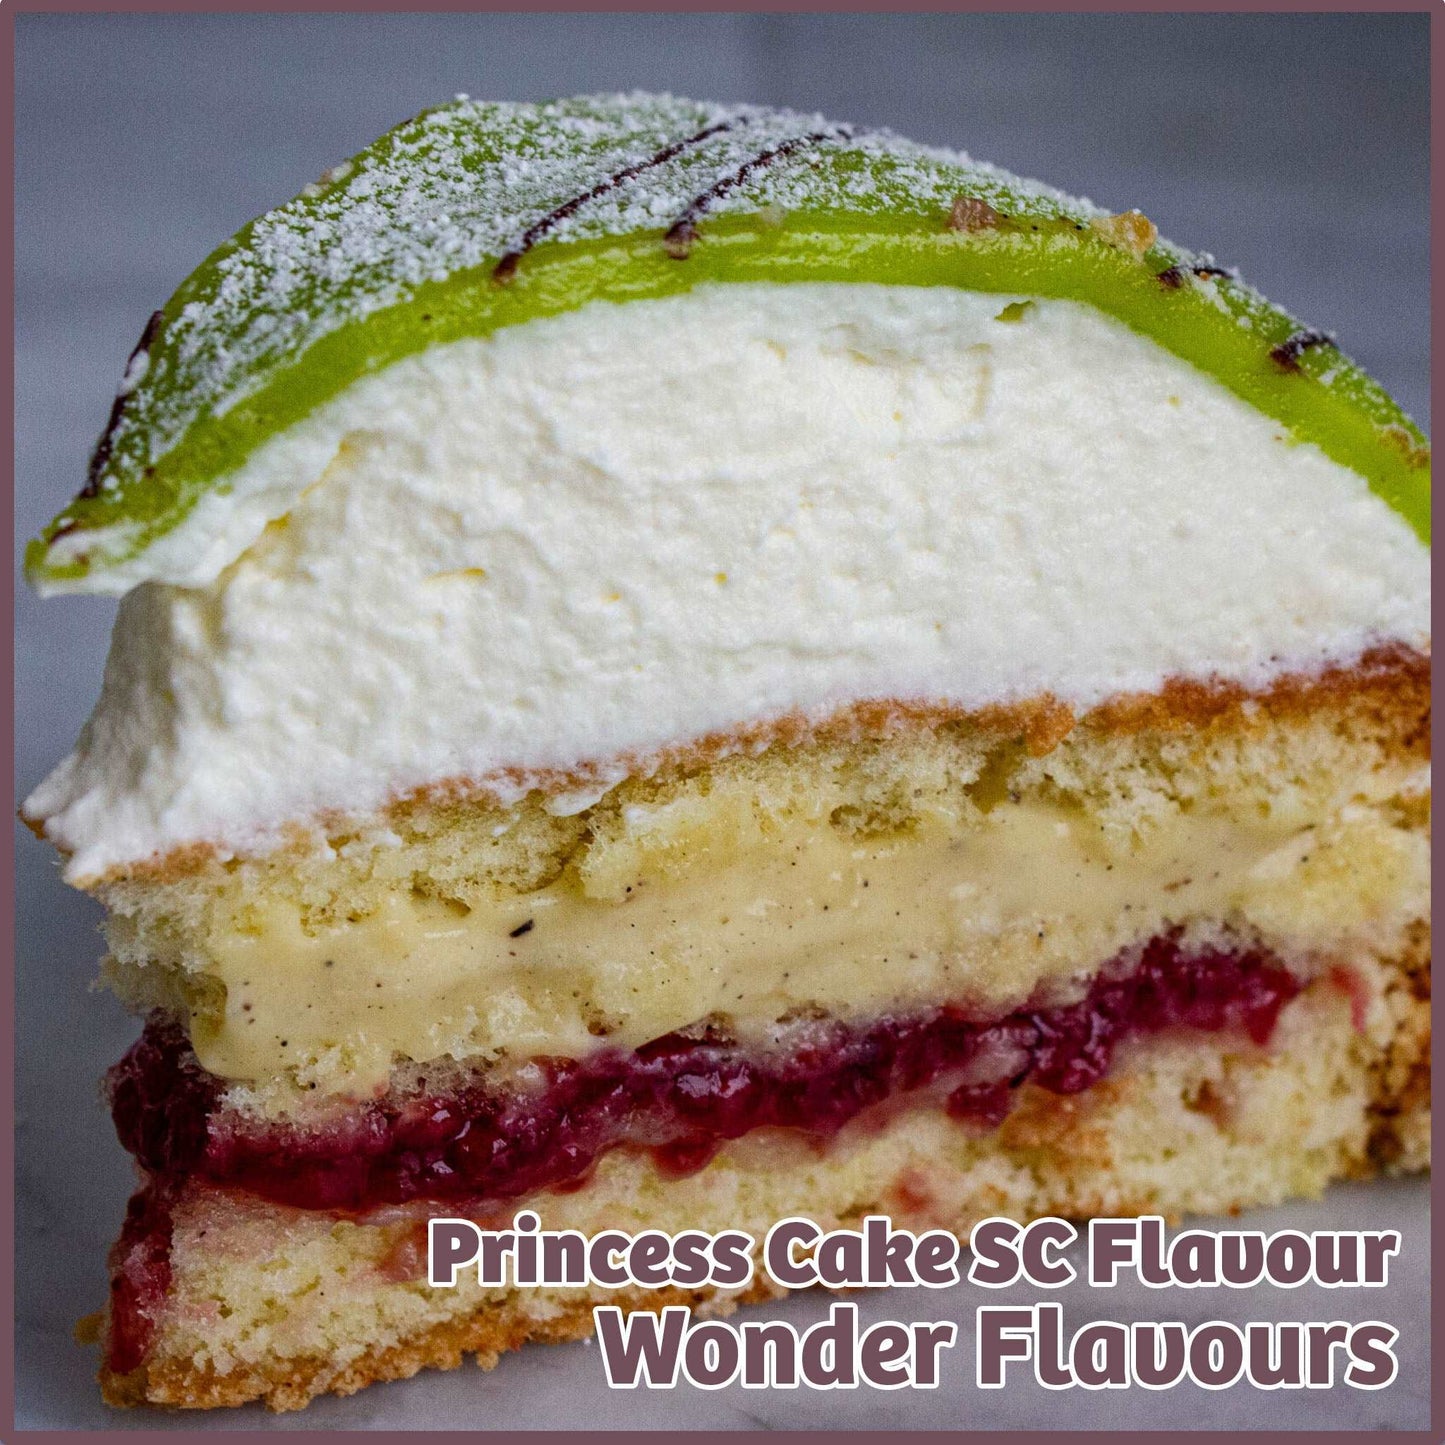 Princess Cake SC Flavour - Wonder Flavours - Flavour Fog - Canada's flavour depot.